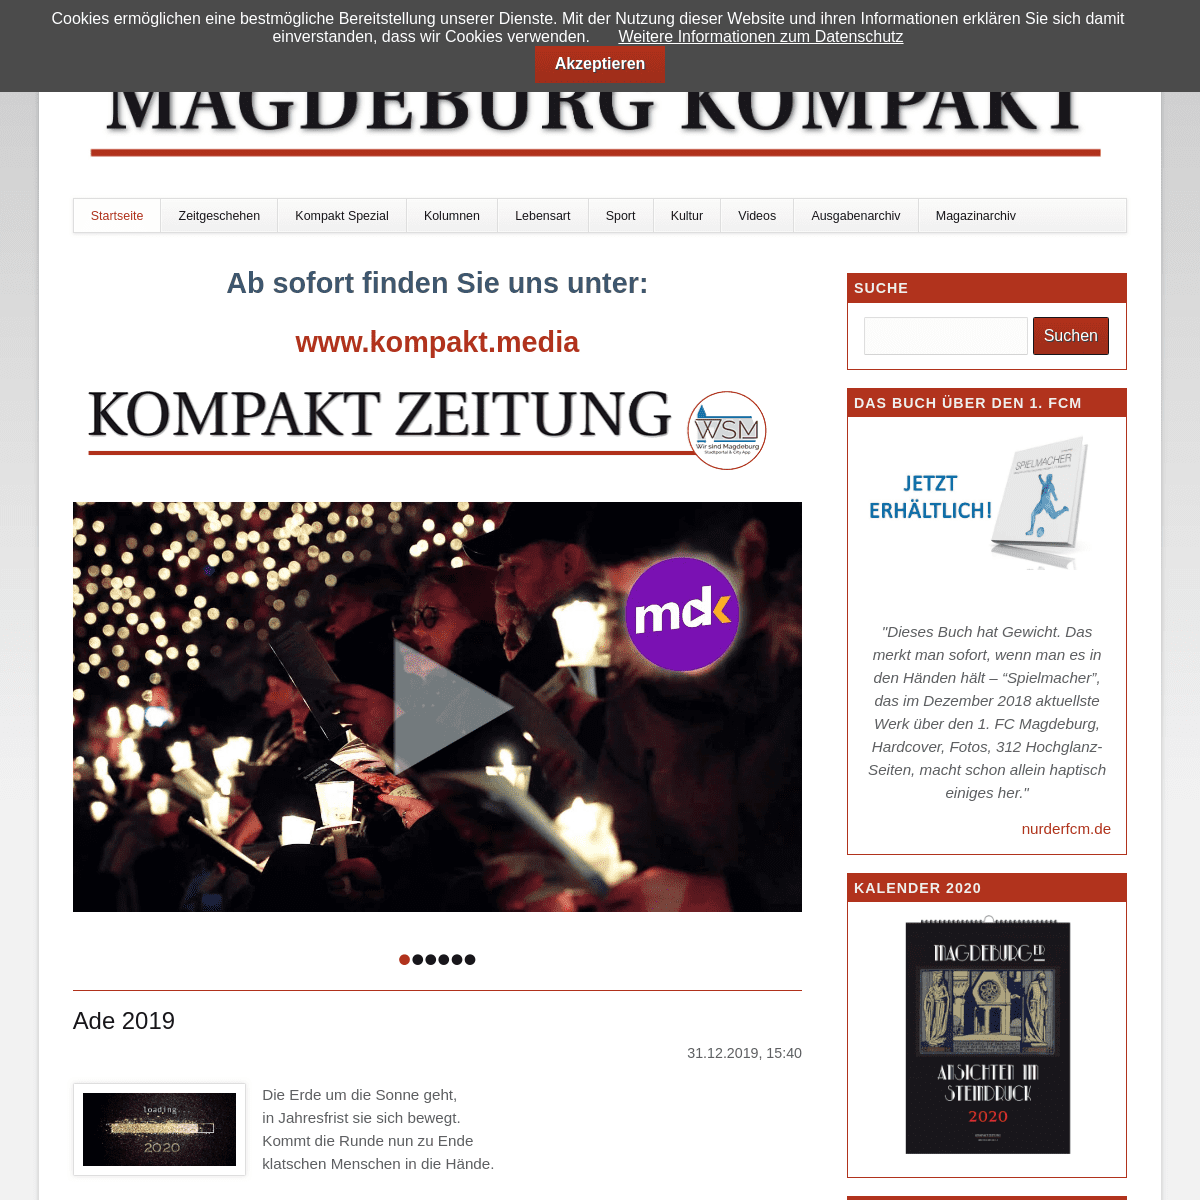 A complete backup of magdeburg-kompakt.de